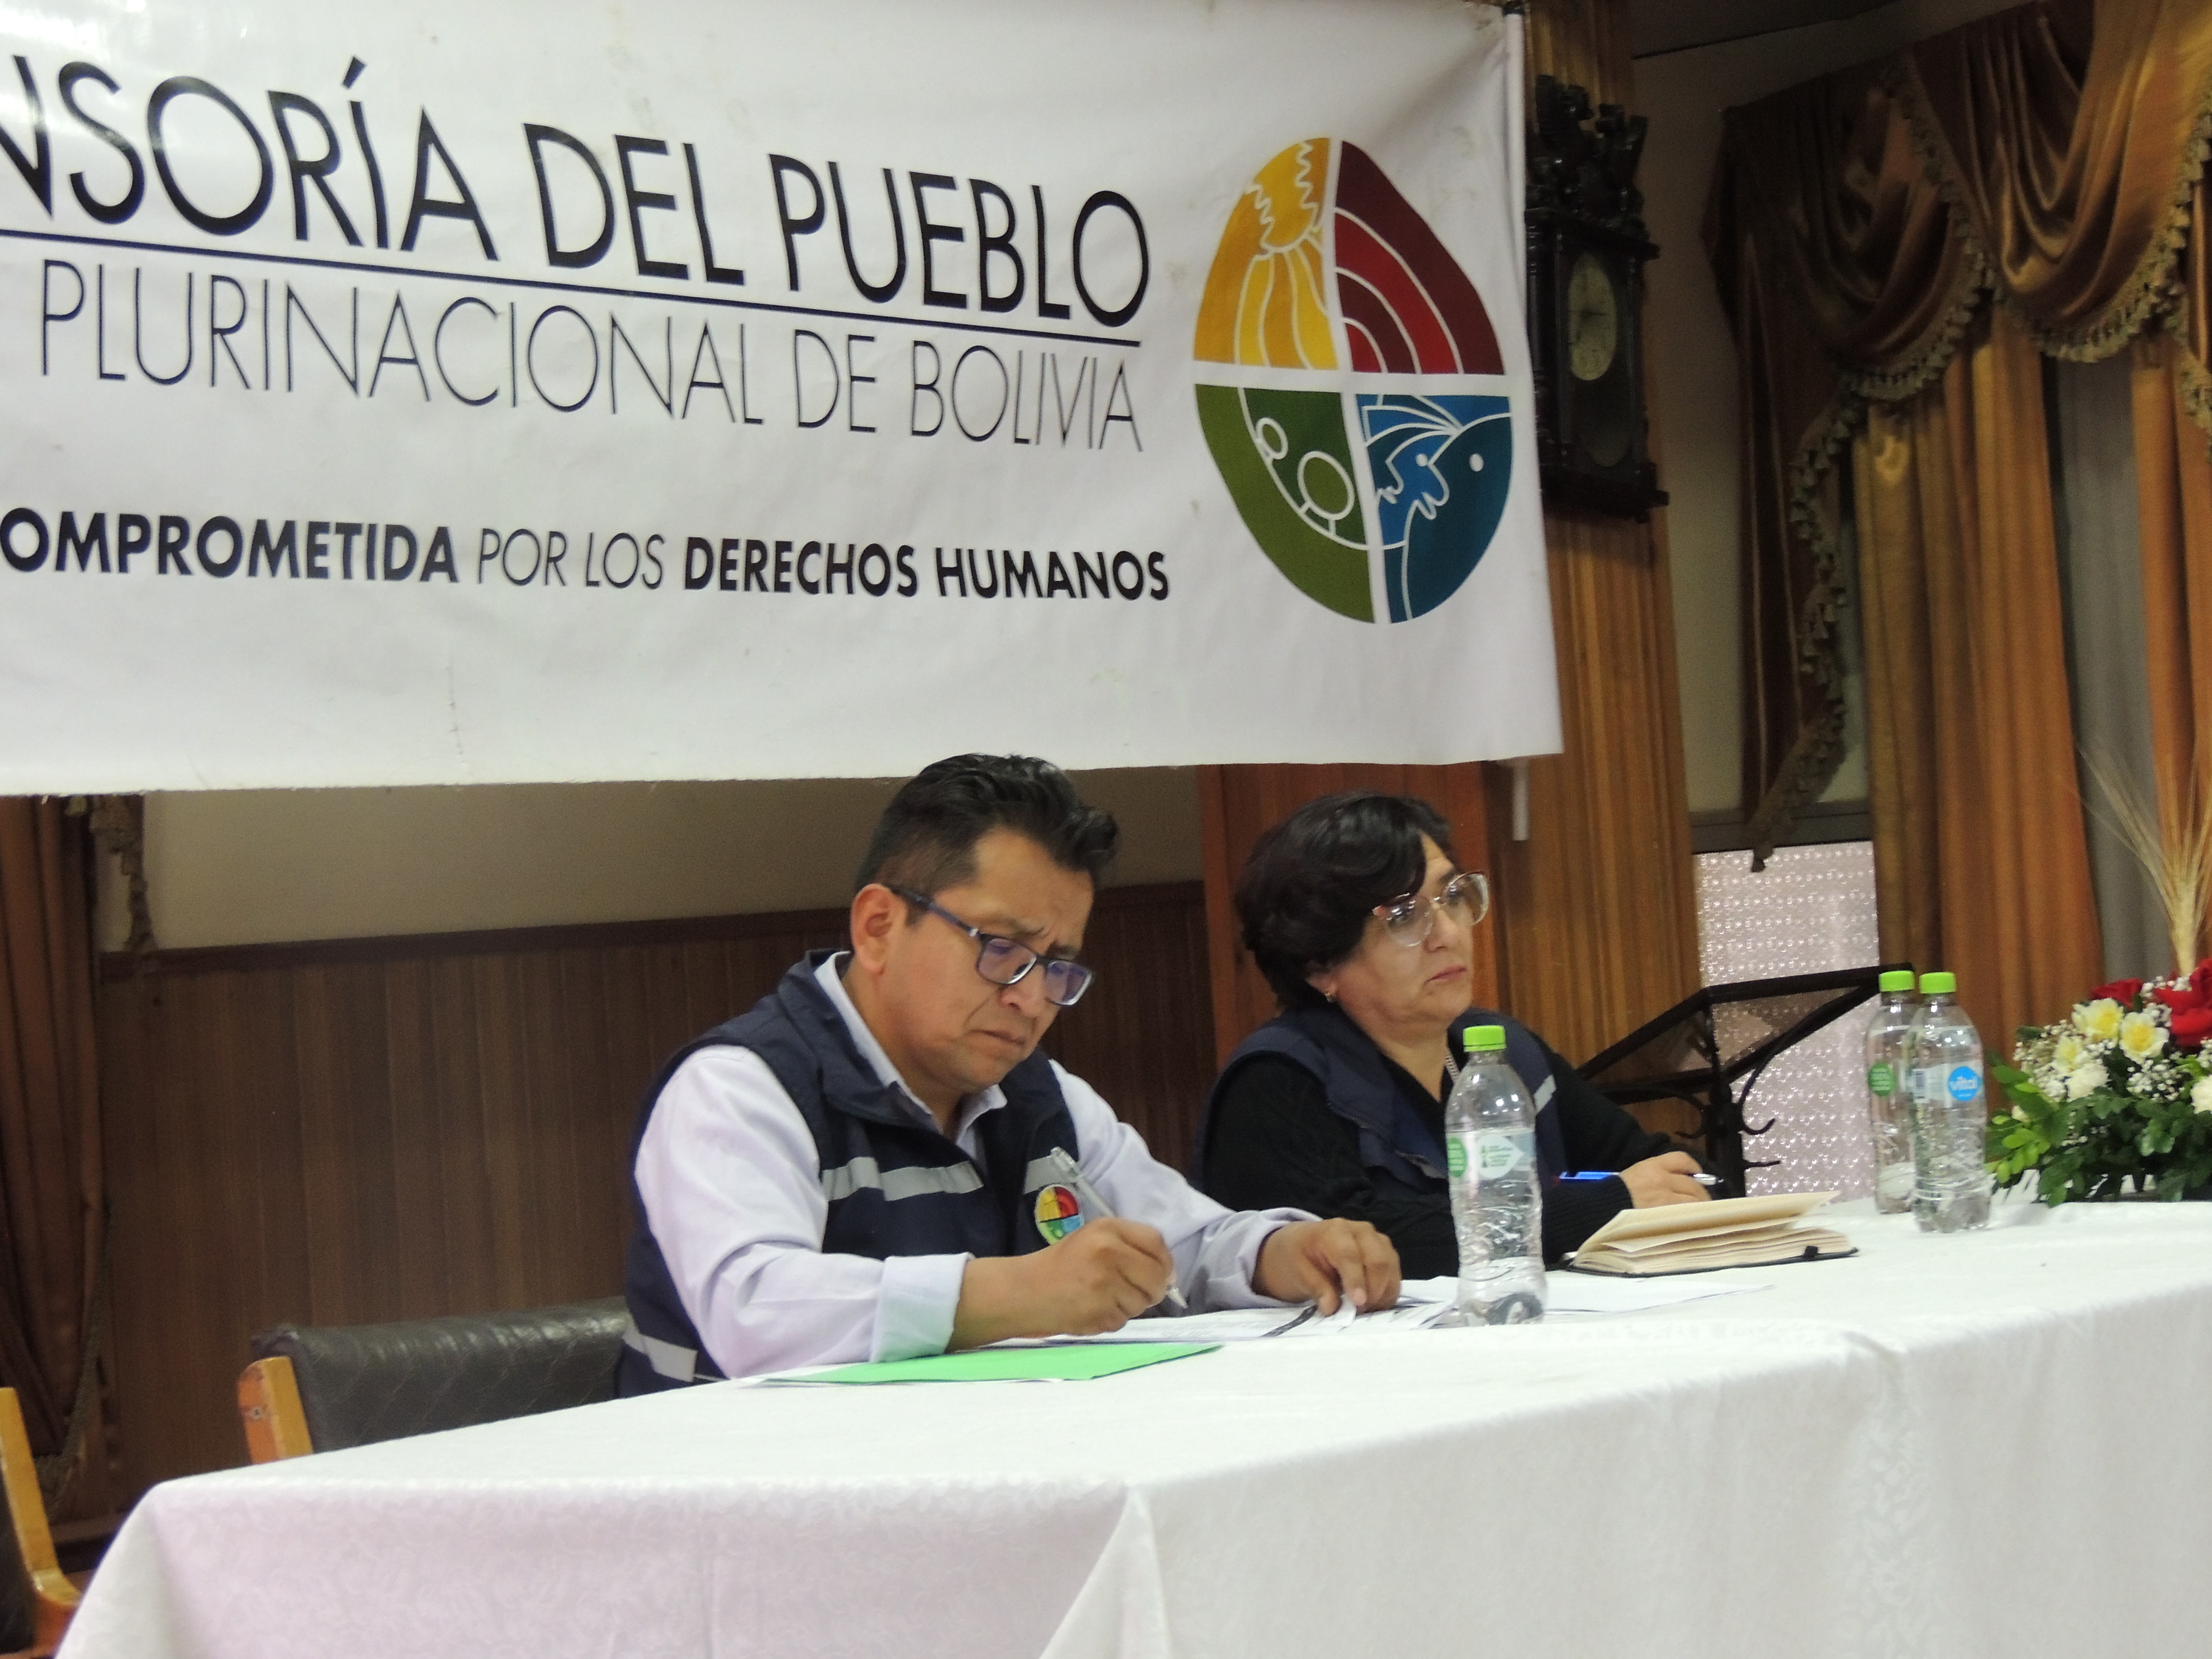 En audiencia pública en Potosí, Defensor del Pueblo recibe denuncias de discriminación y falencias en la atención médica hacia personas con discapacidad